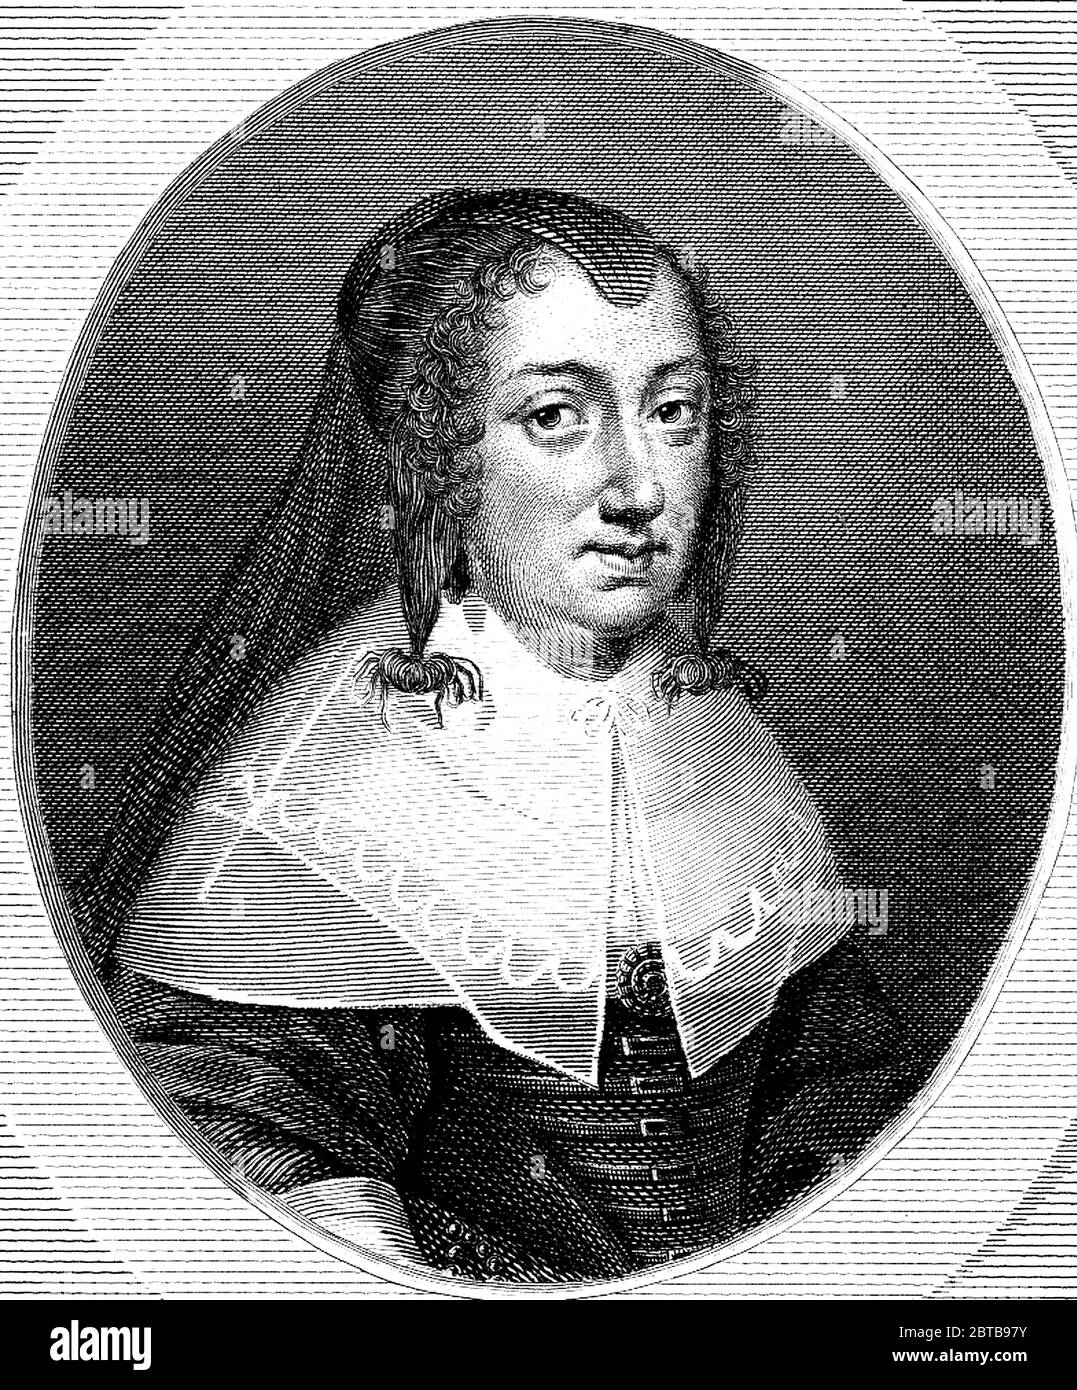 1645 ca , FRANCIA: La regina francese ANNA D'AUSTRIA nata dagli Asburgo spagnoli ( 1601 - 1666 ), moglie di Re LUIGI XIII ( 1601 - 1643 ), madre di Re Luigi XIV Roi Soleil ( 1638 - 1715 ) e reggente di Francia durante la sua minoranza . Durante la sua reggenza il Cardinale Mazarin ha servito come Ministro capo della Francia . Ritratto di incisore non denigato, 1810 ca. - ANNA d'Autriche - Regina ANNA D'AUSTRIA - ASBURGO - ABSBURGO - Mazarino - NOBILTÀ - NOBILI francesi - Nobiltà franca - FRANCIA - illustrazione - illustrazione - incisione - incisione - Regina di Francia - collare - colletto - pizzo - pizzo - ricci - riccio Foto Stock